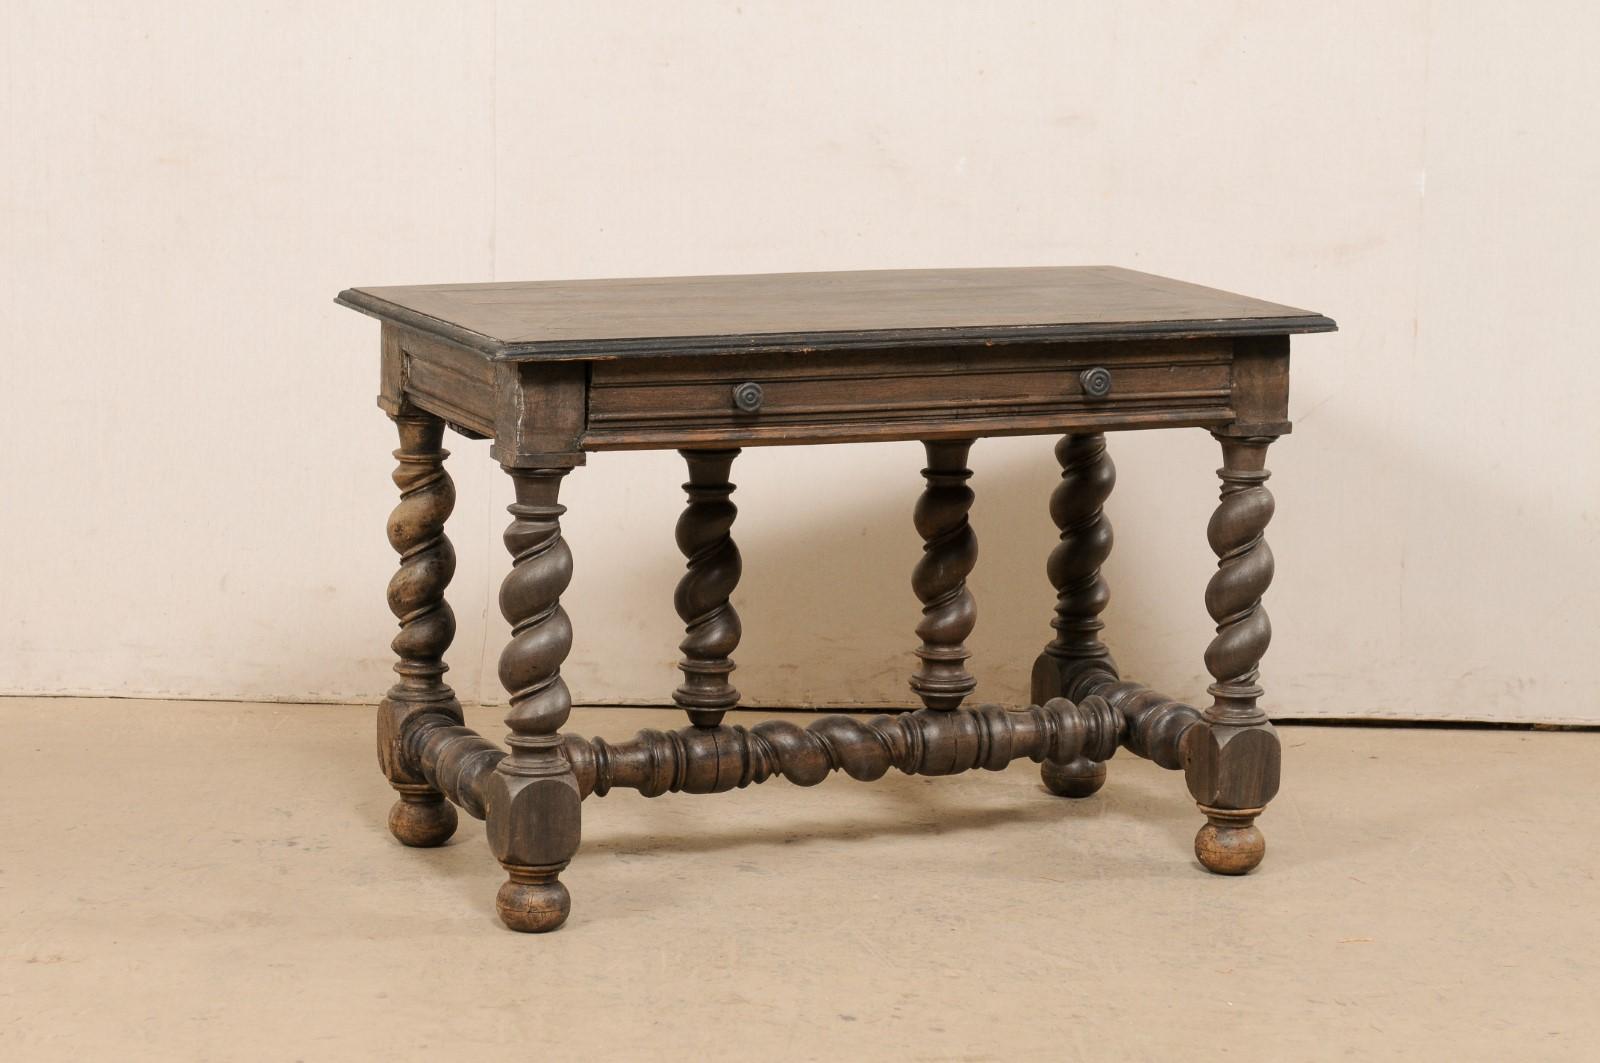 Une table italienne en bois sculpté avec un seul tiroir du tournant du 18ème et 19ème siècle. Cette table ancienne d'Italie a un plateau de forme rectangulaire qui surplombe un tablier sous lequel se trouve un tiroir sur un long côté, et est